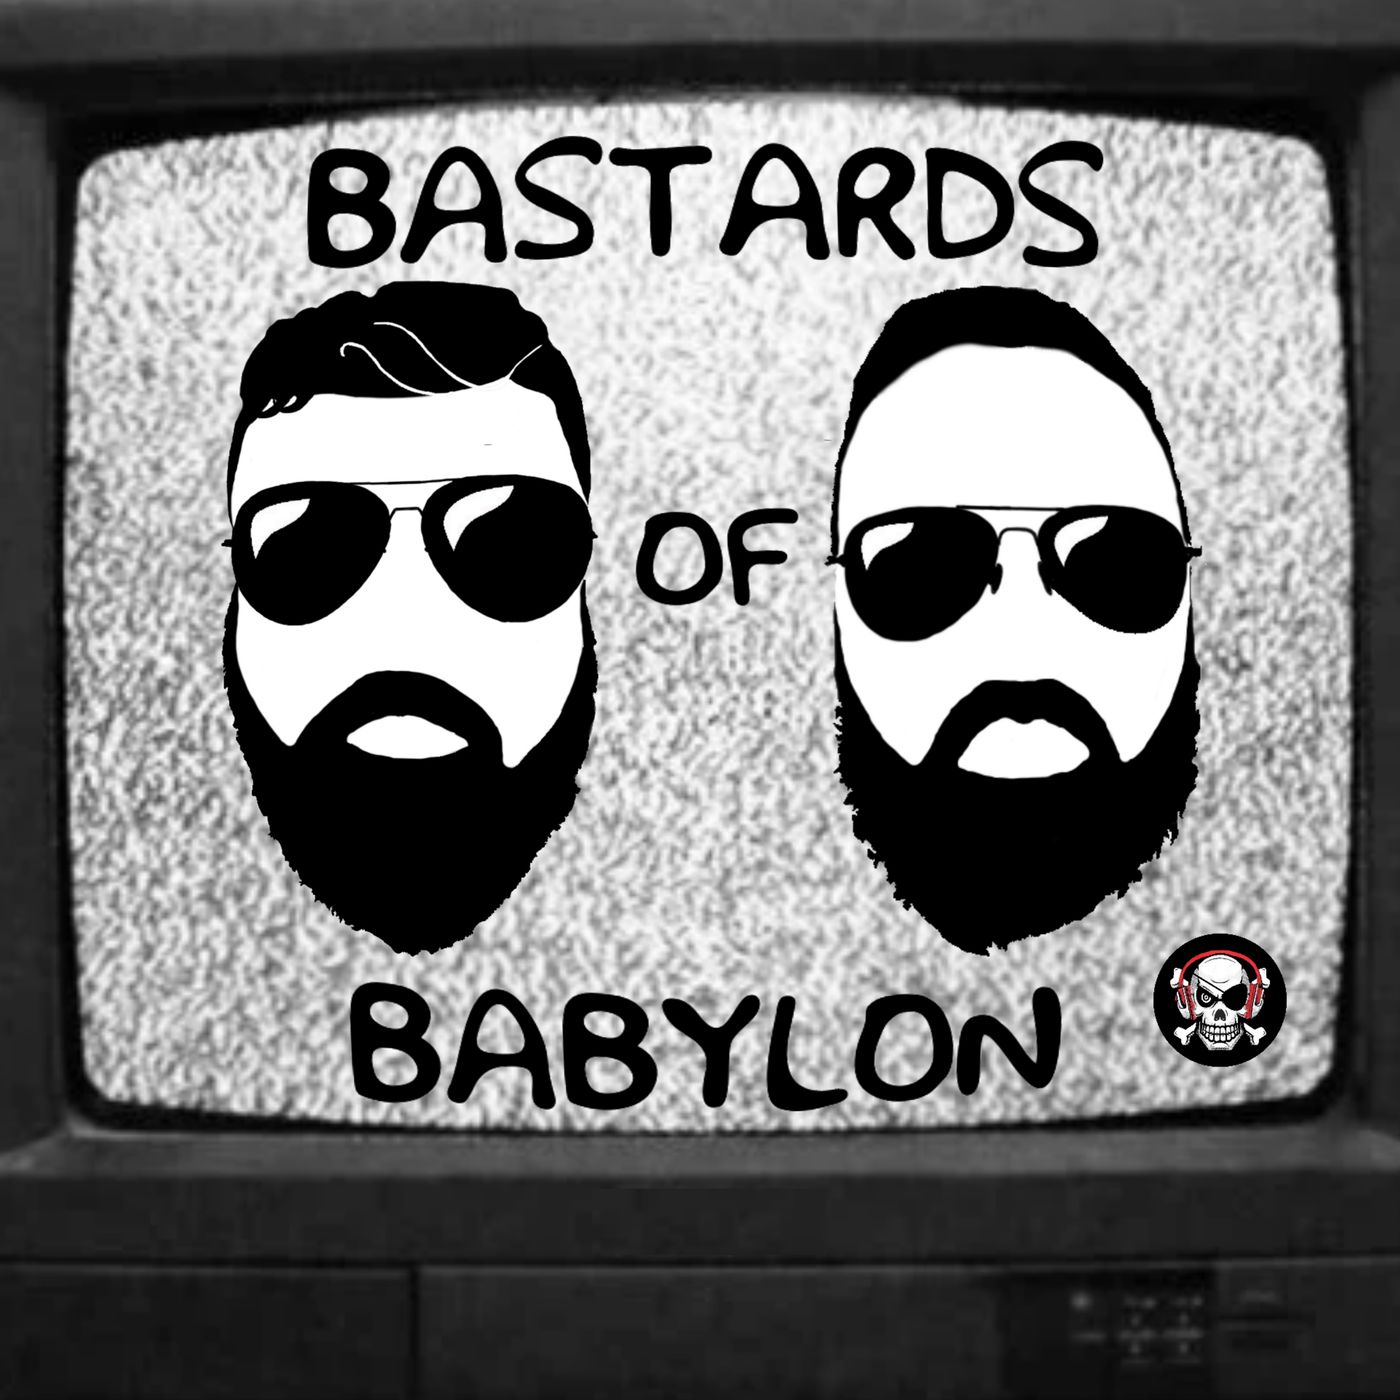 Bastards of Babylon